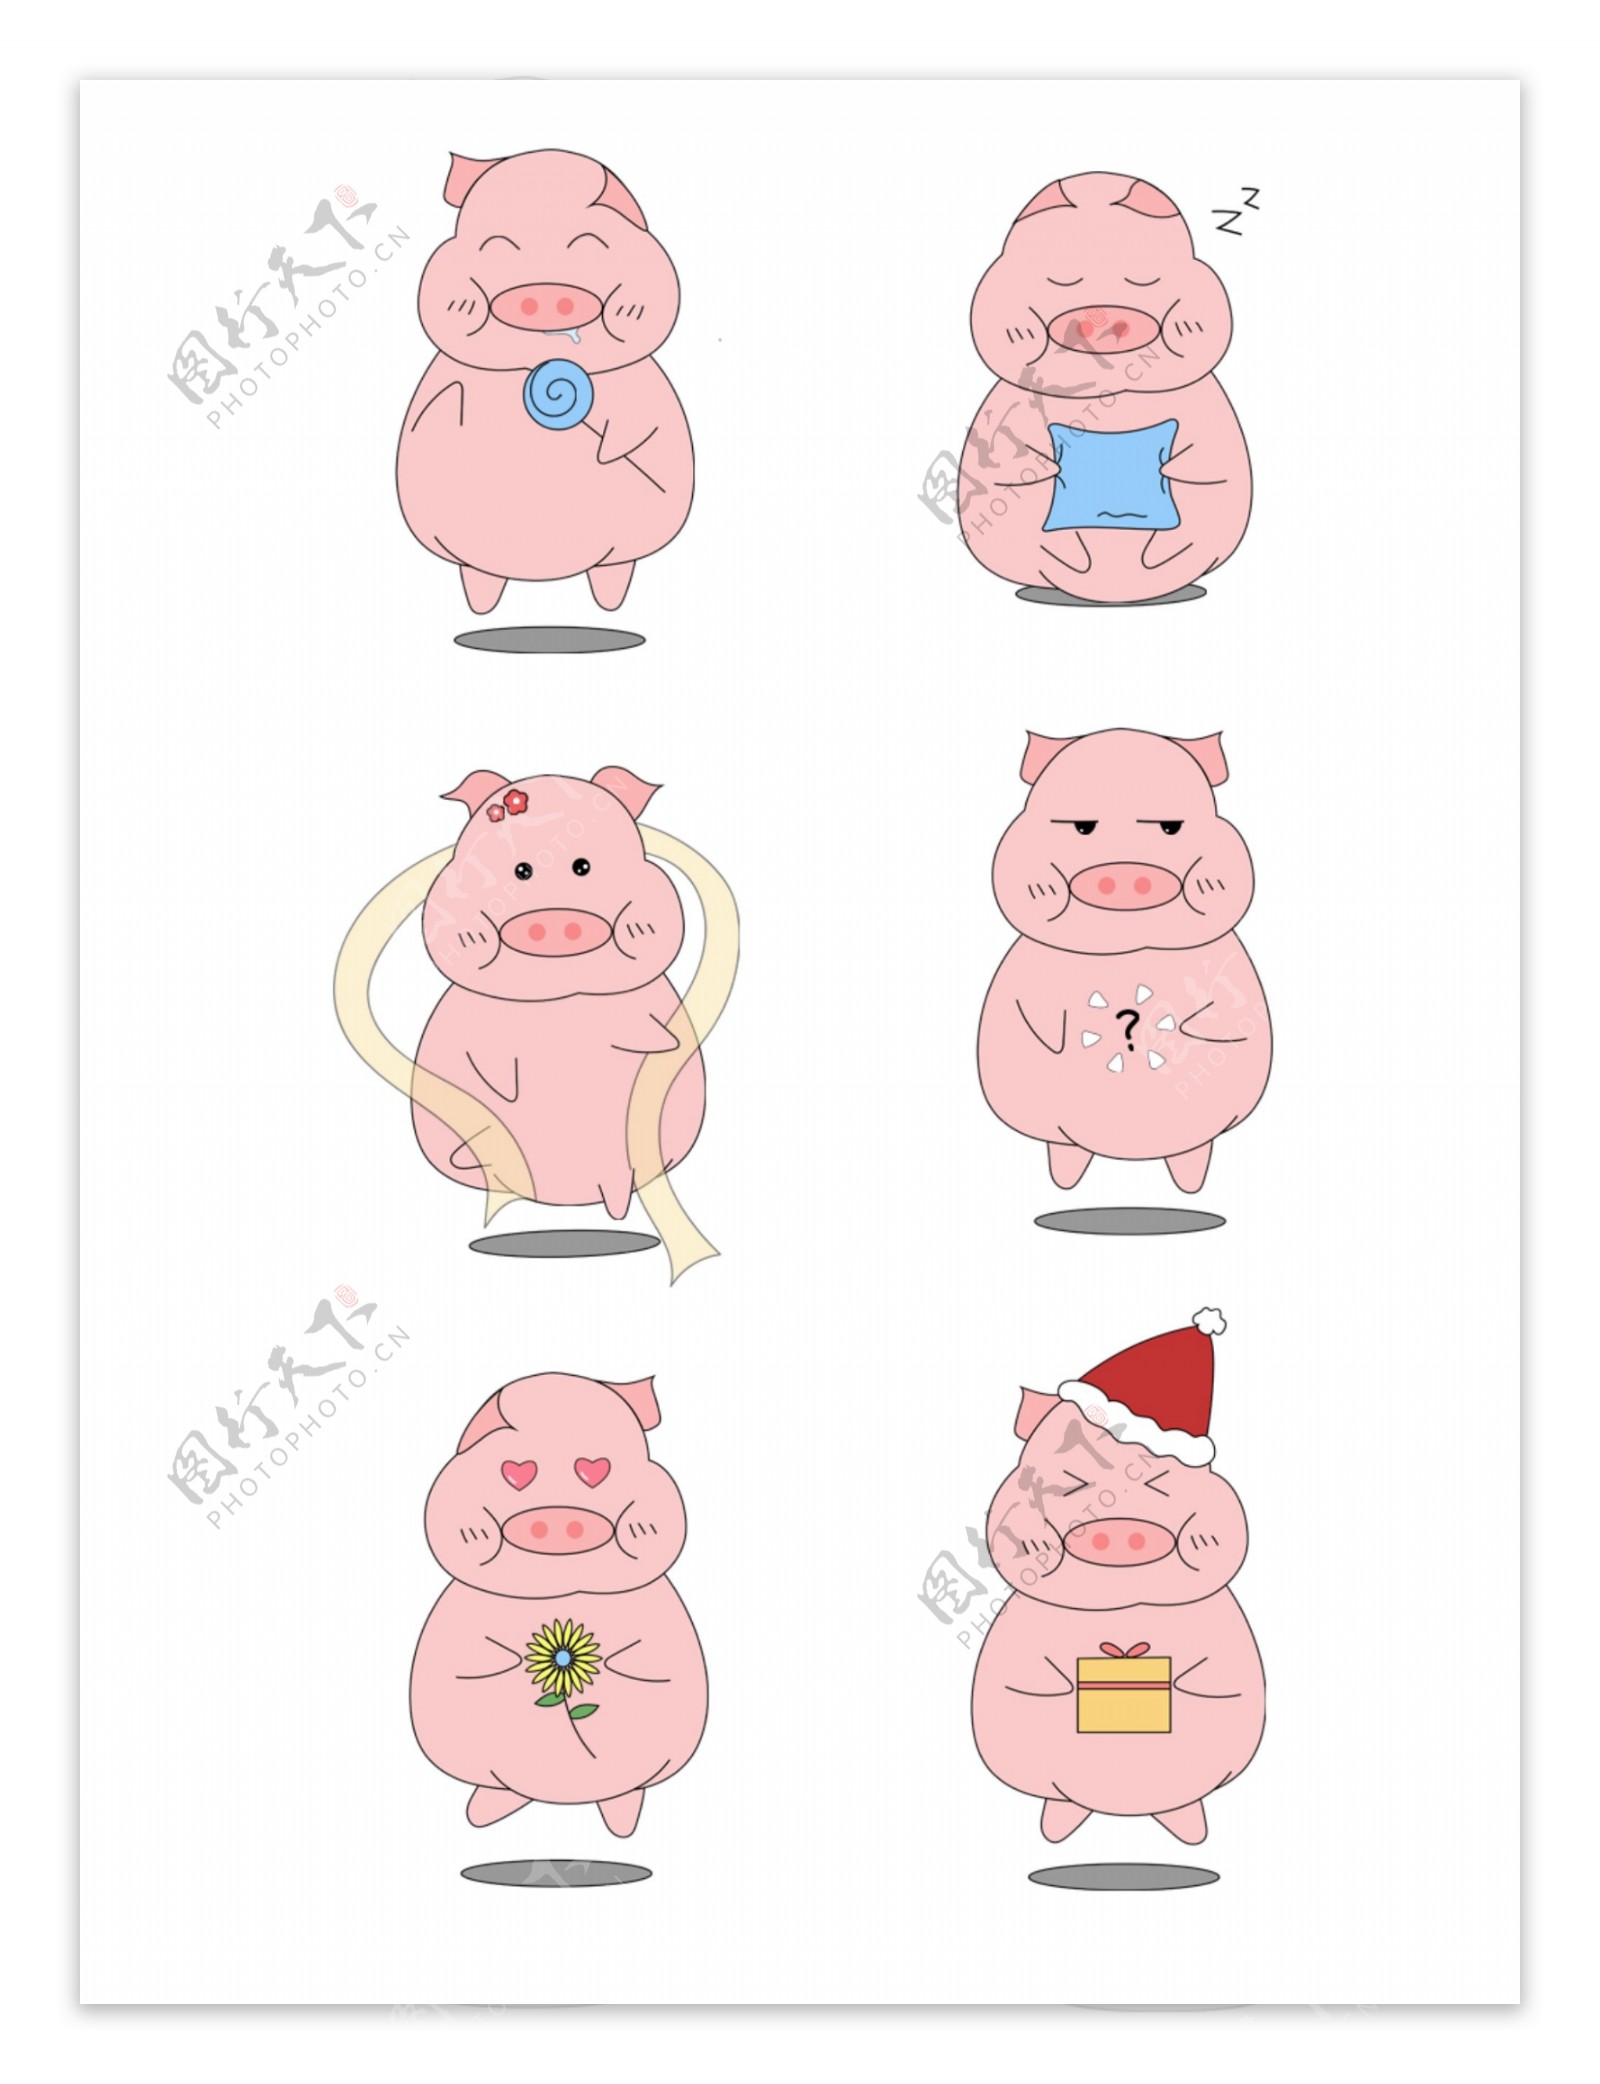 猪年卡通可爱粉色小猪表情包可商用元素